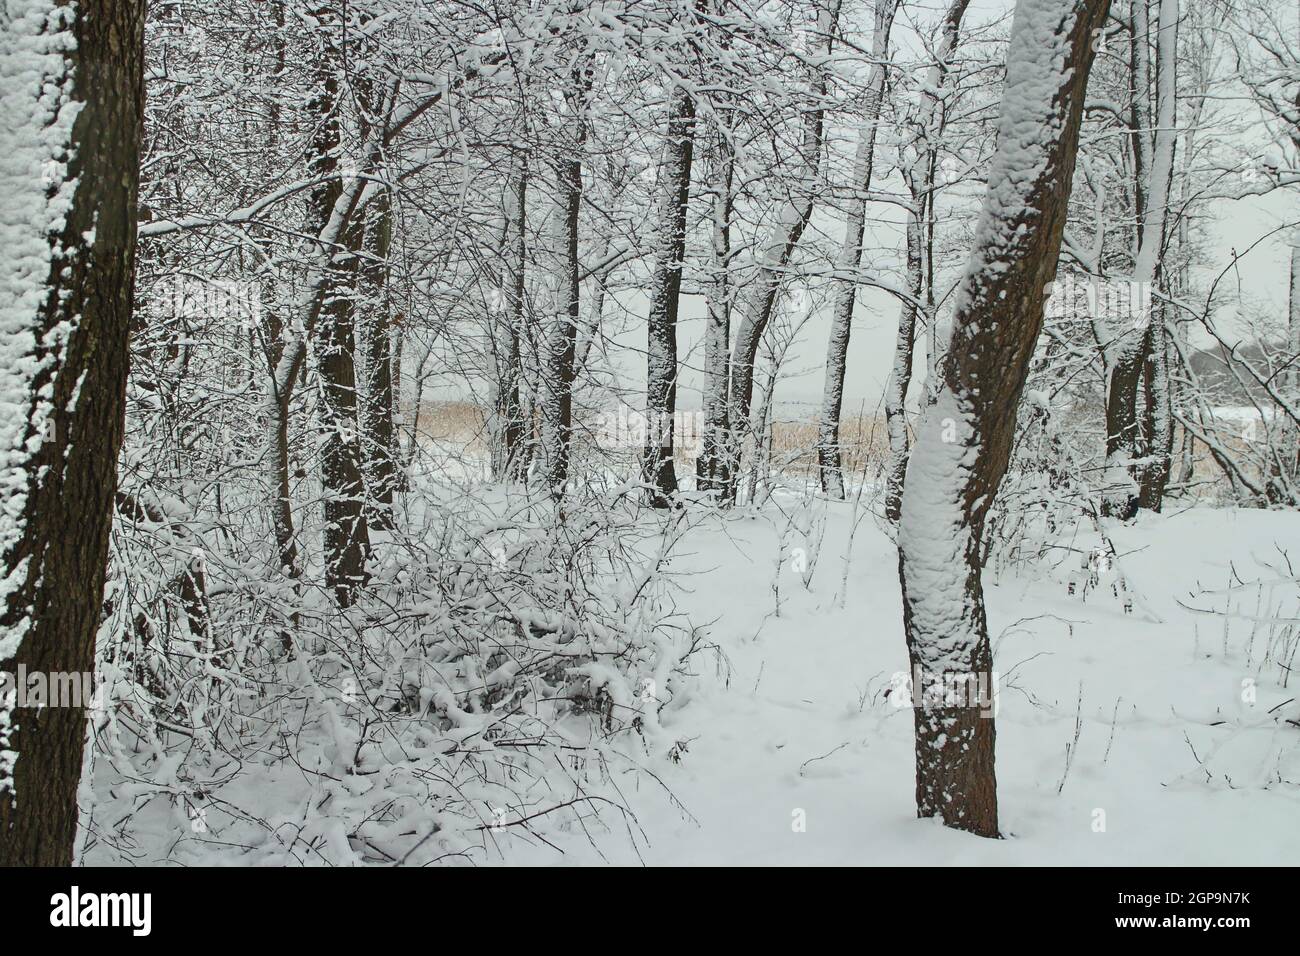 Winterlandschaft, der Wald nach einem Schneefall ist alles mit Schnee bedeckt, auch die Stämme von Bäumen, in der Ferne ein See in weißem Nebel Stockfoto